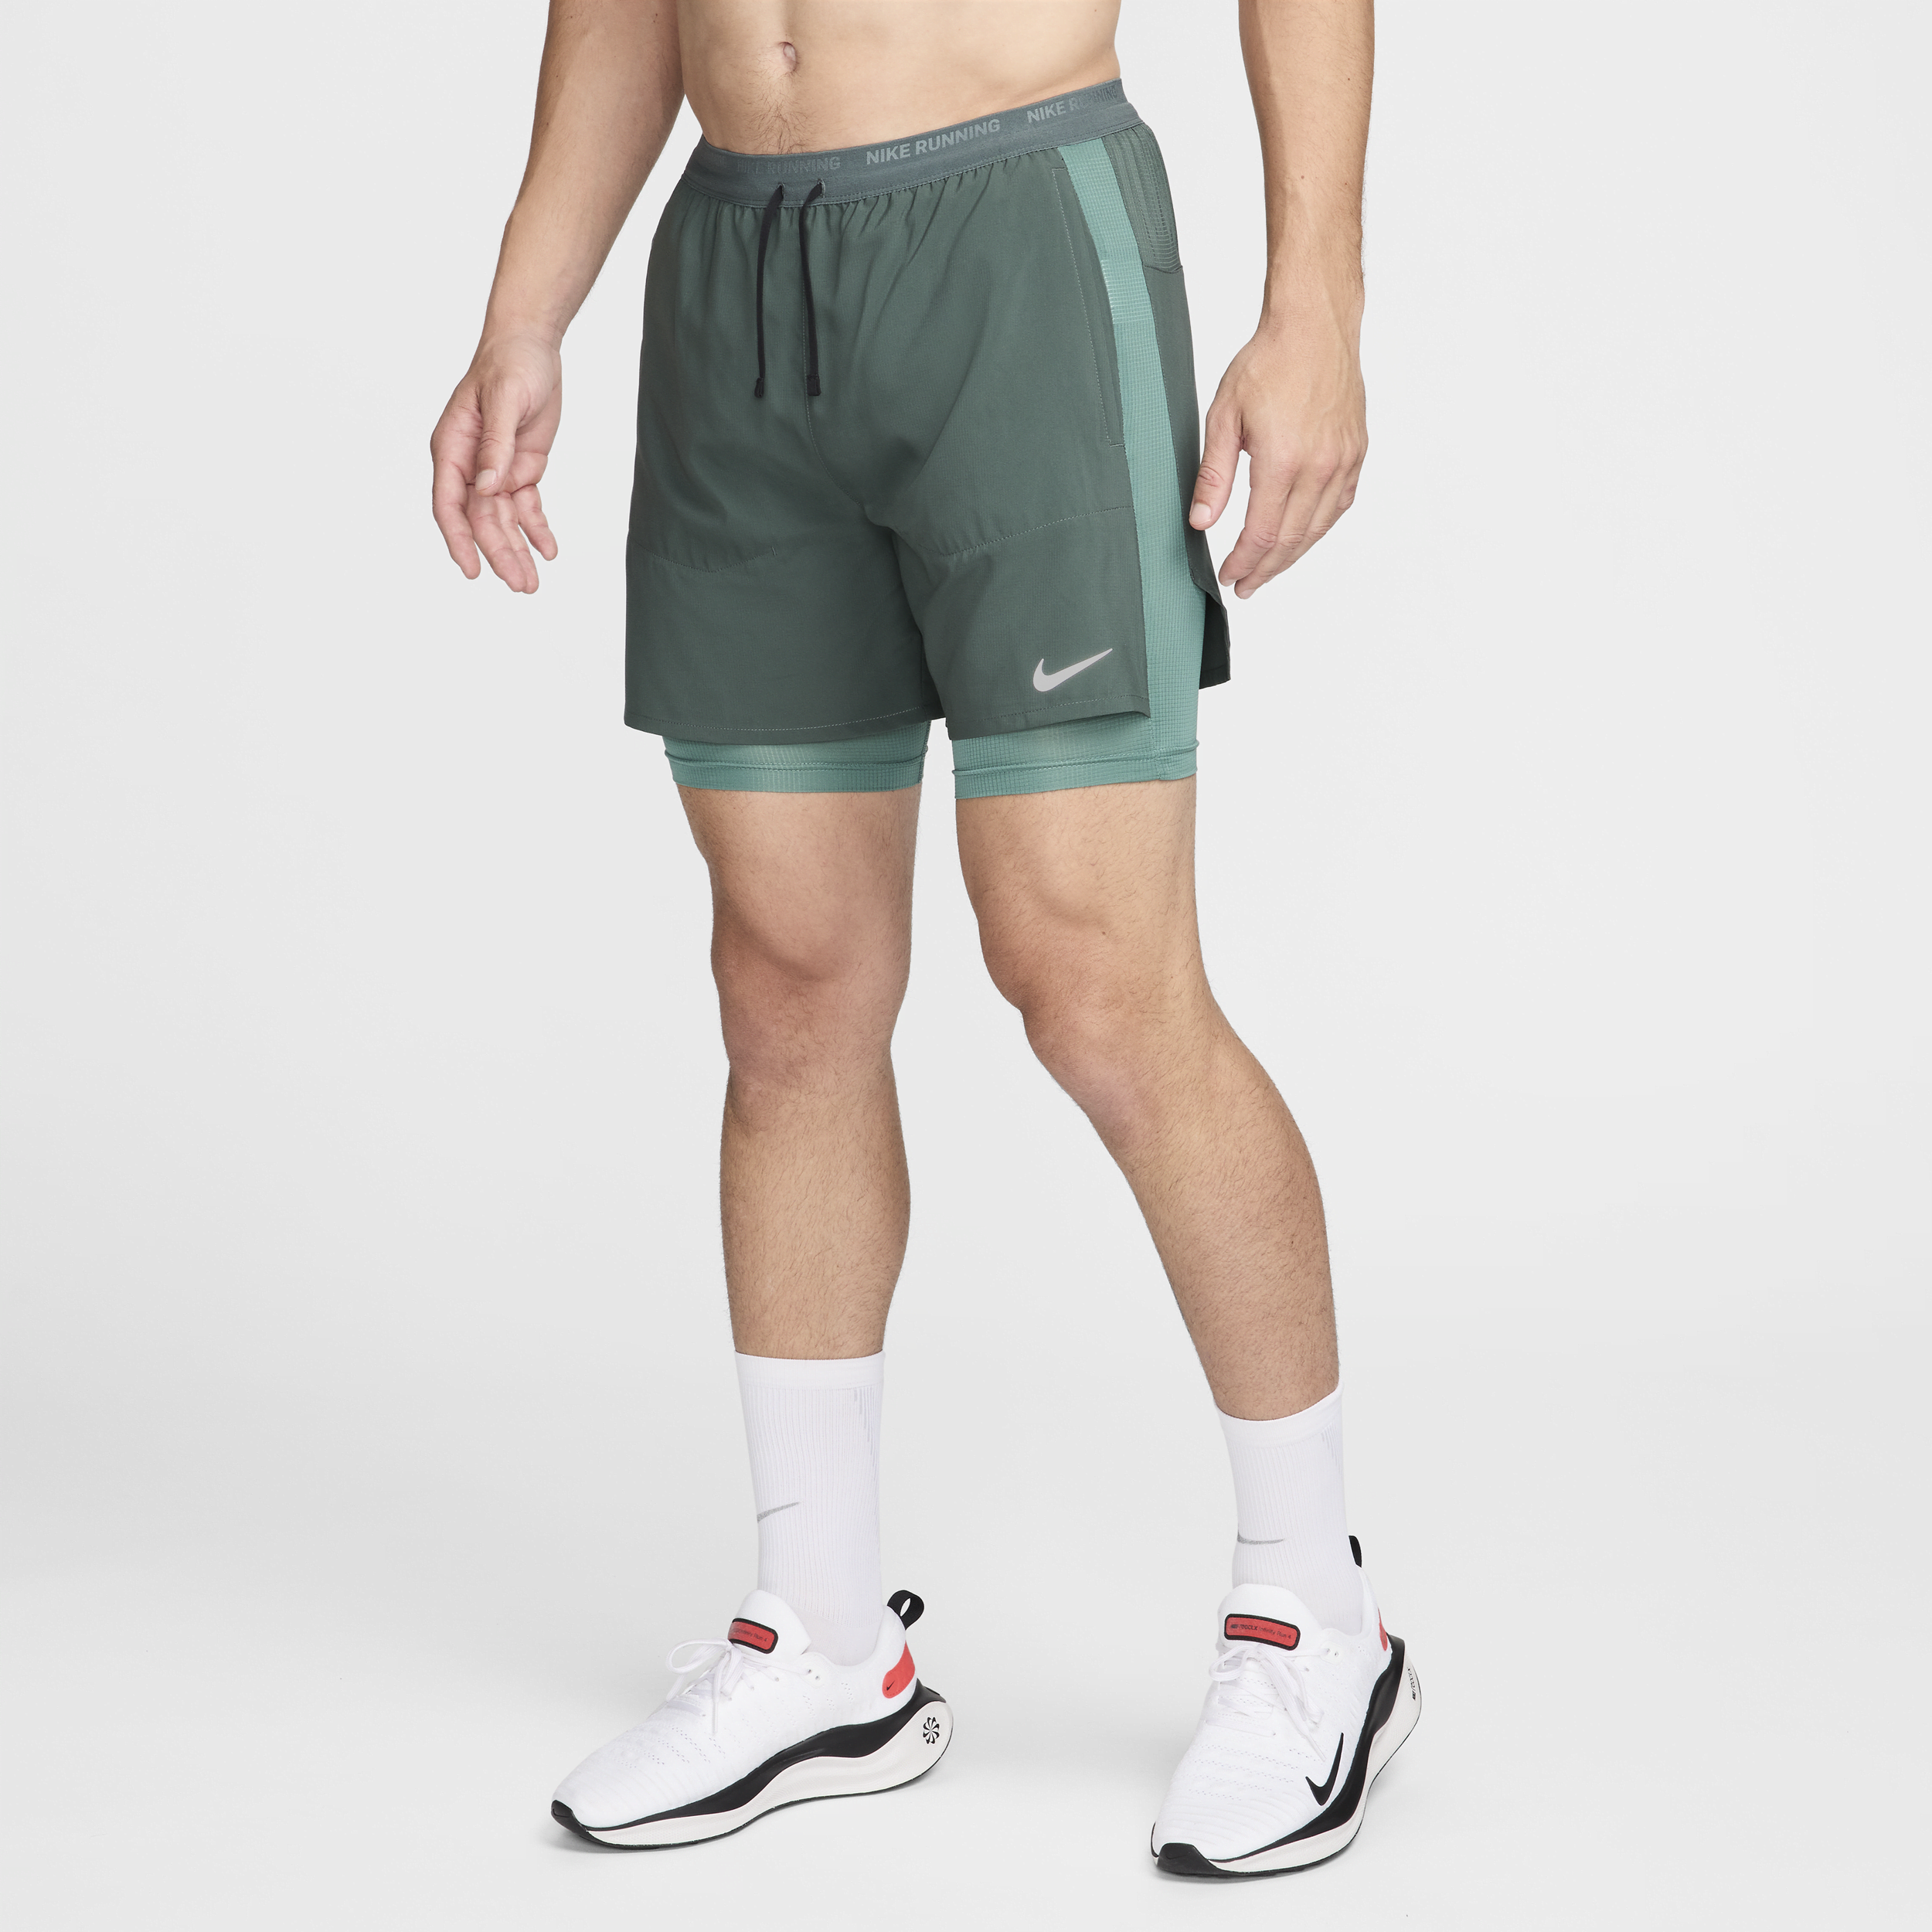 Nike Stride Dri-Fit-hybridløbeshorts til mænd (13 cm) - grøn